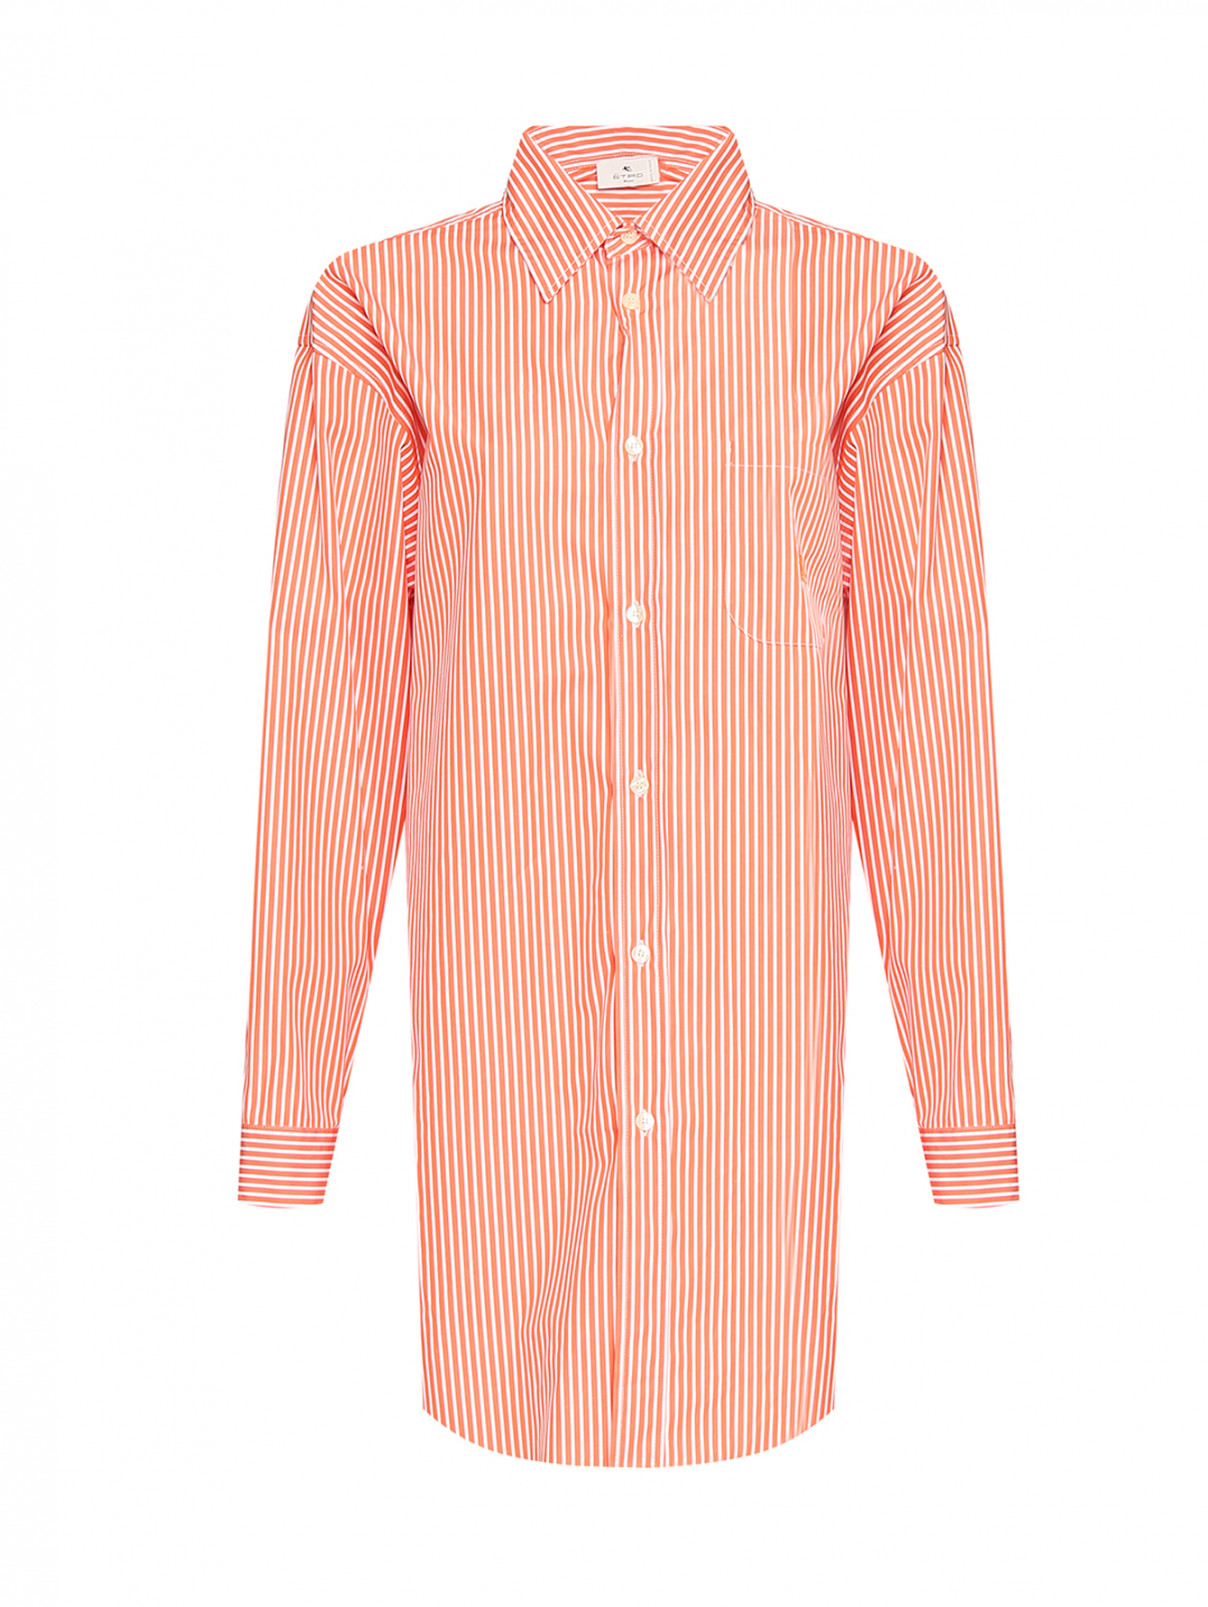 Блуза из хлопка с узором "Полоска" Etro  –  Общий вид  – Цвет:  Оранжевый